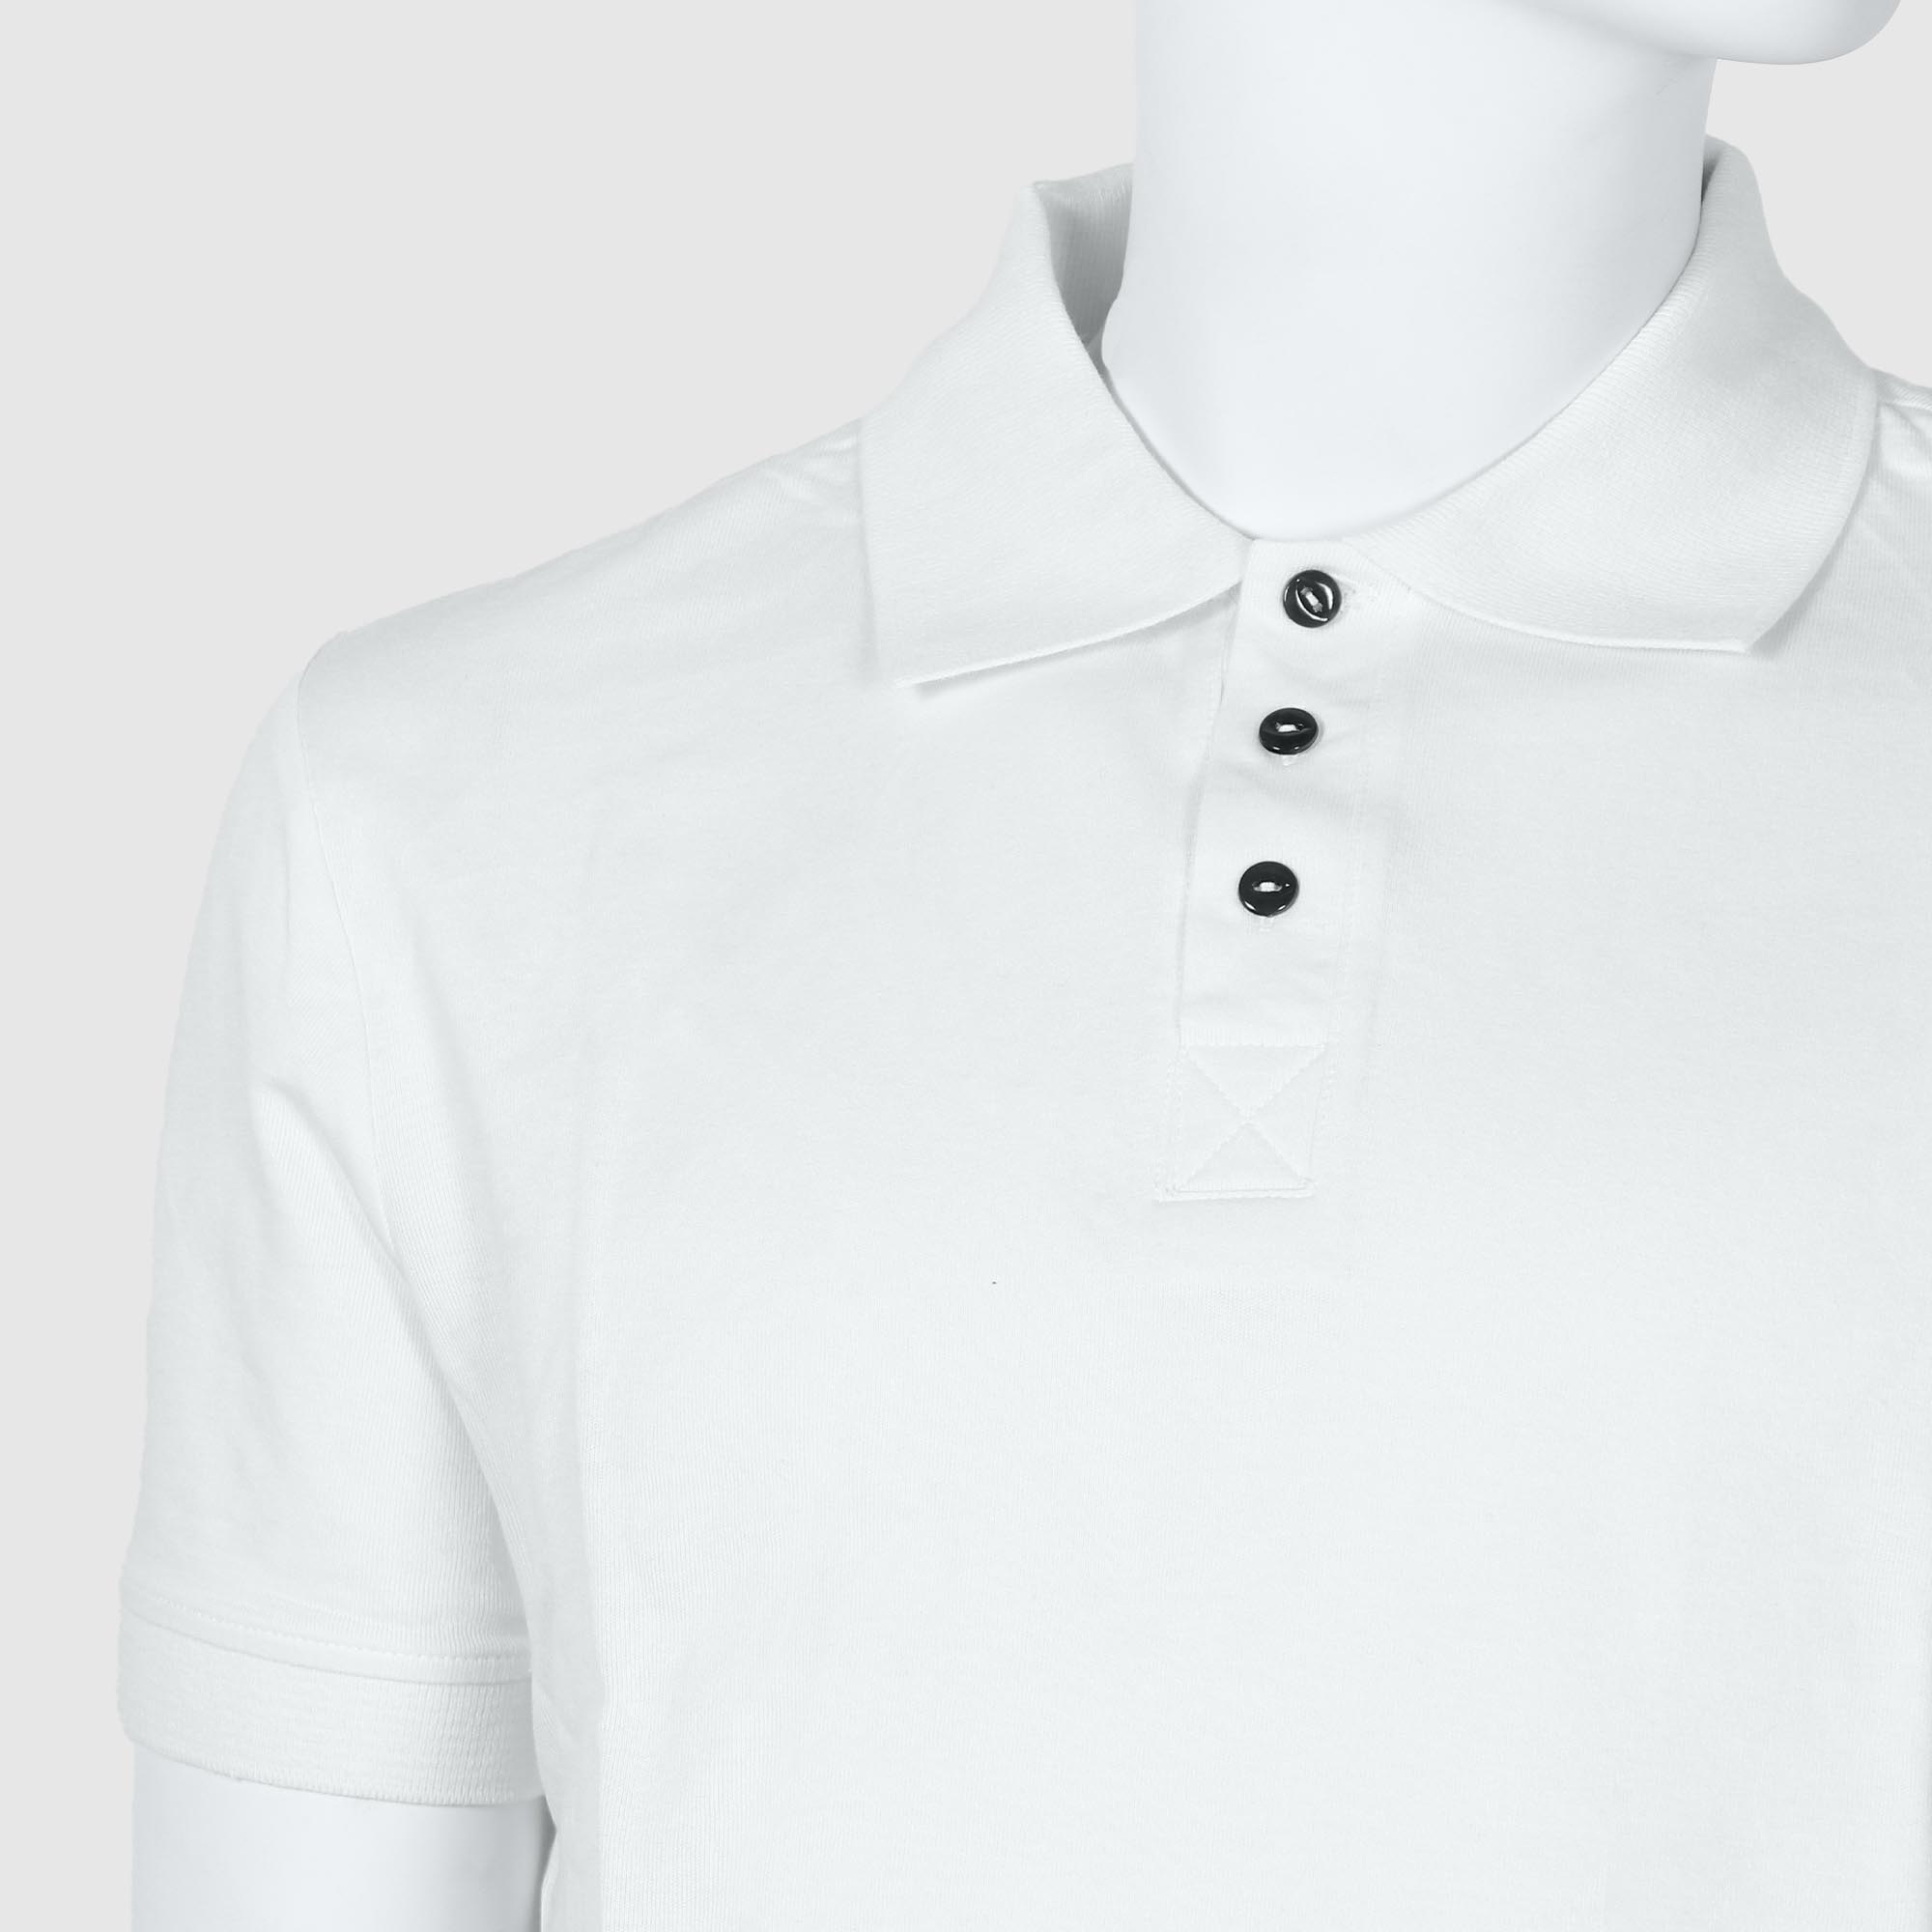 Мужская футболка-поло Diva Teks белая (DTD-07), цвет белый, размер 54-56 - фото 3